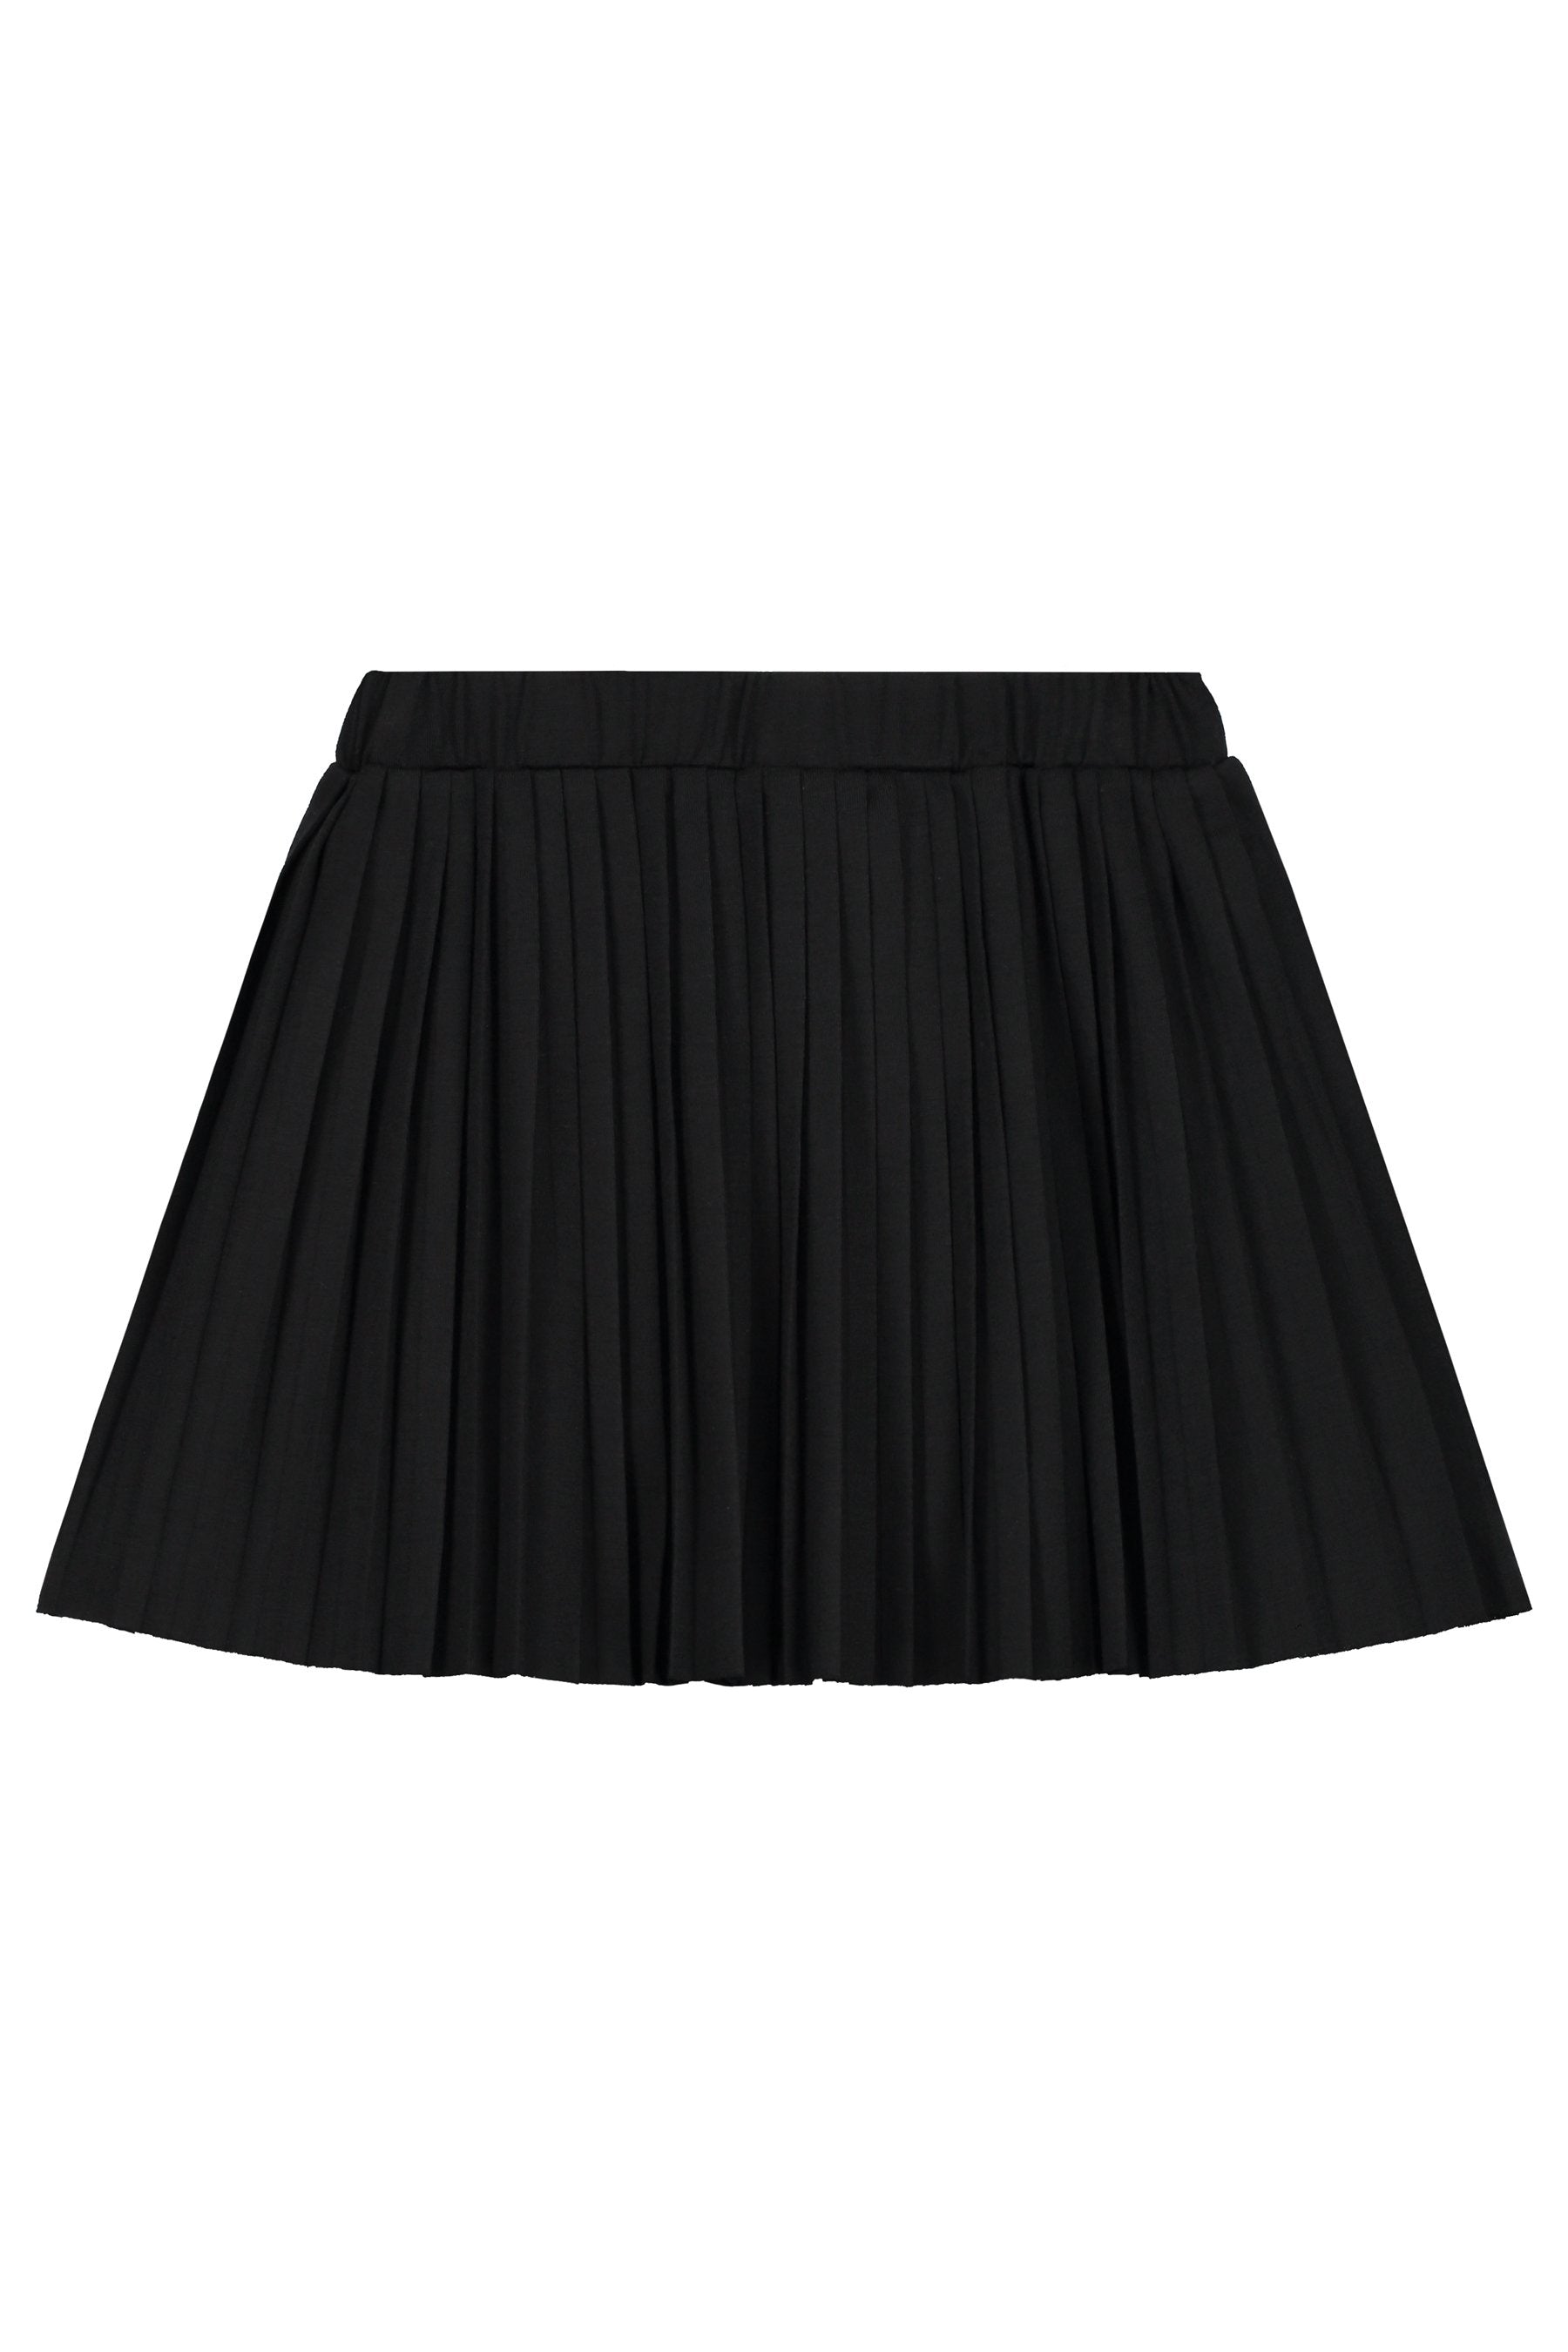 Meisjes Skirt van Levv in de kleur Black in maat 176.